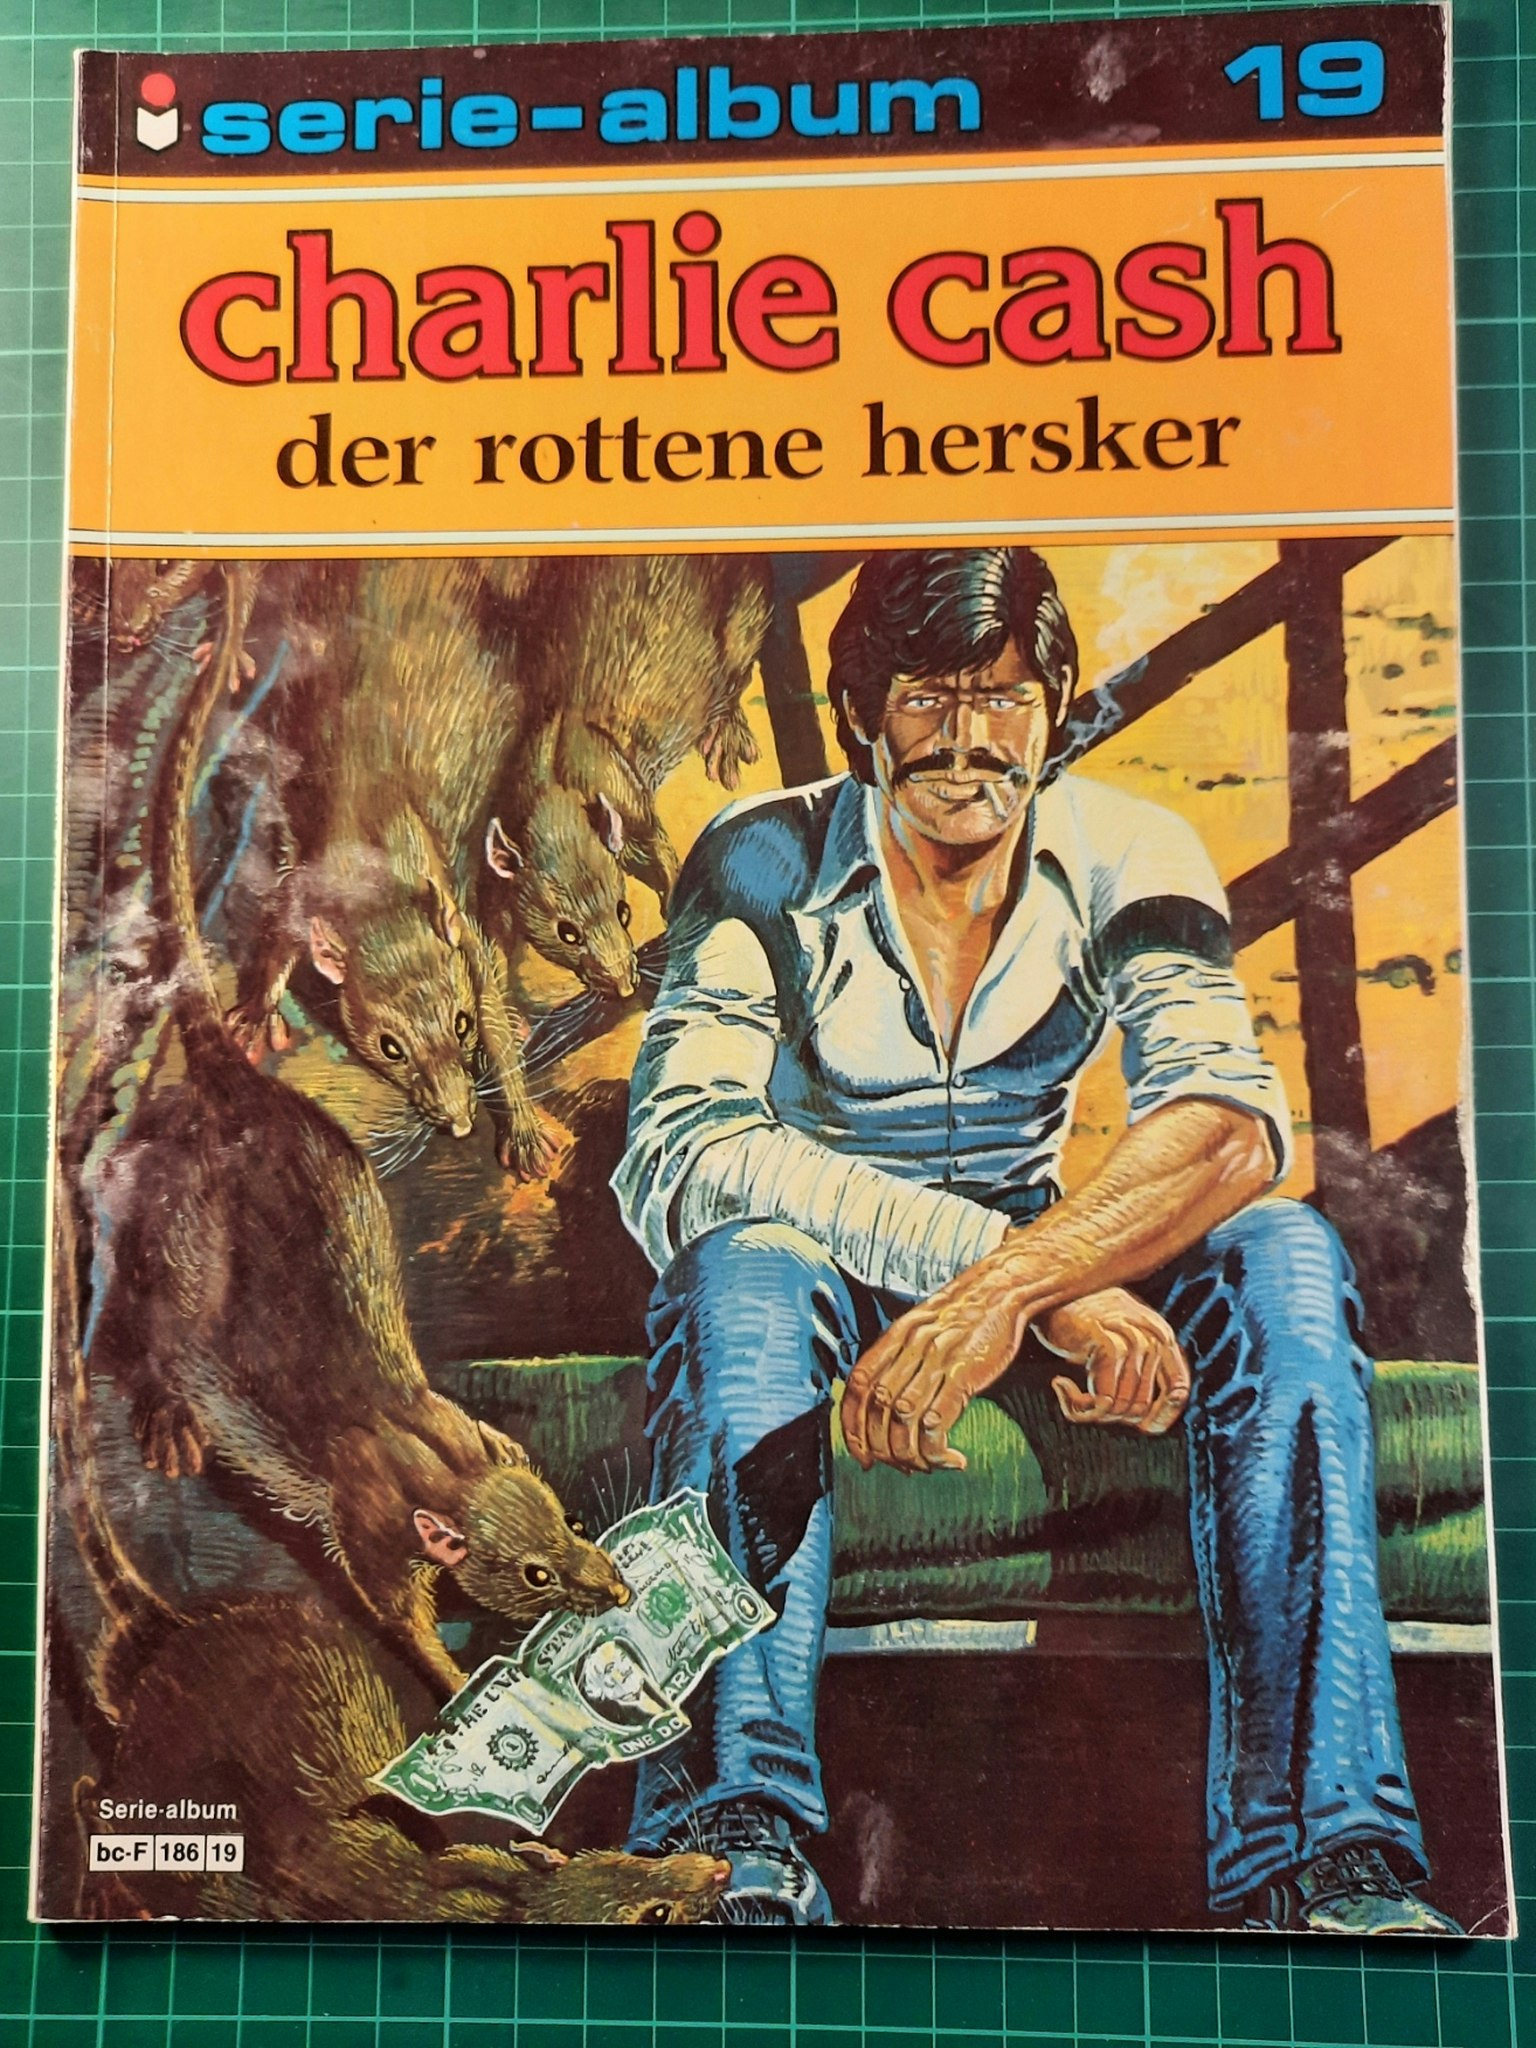 Serie-album 19 Charlie Cash Der rottene hersker